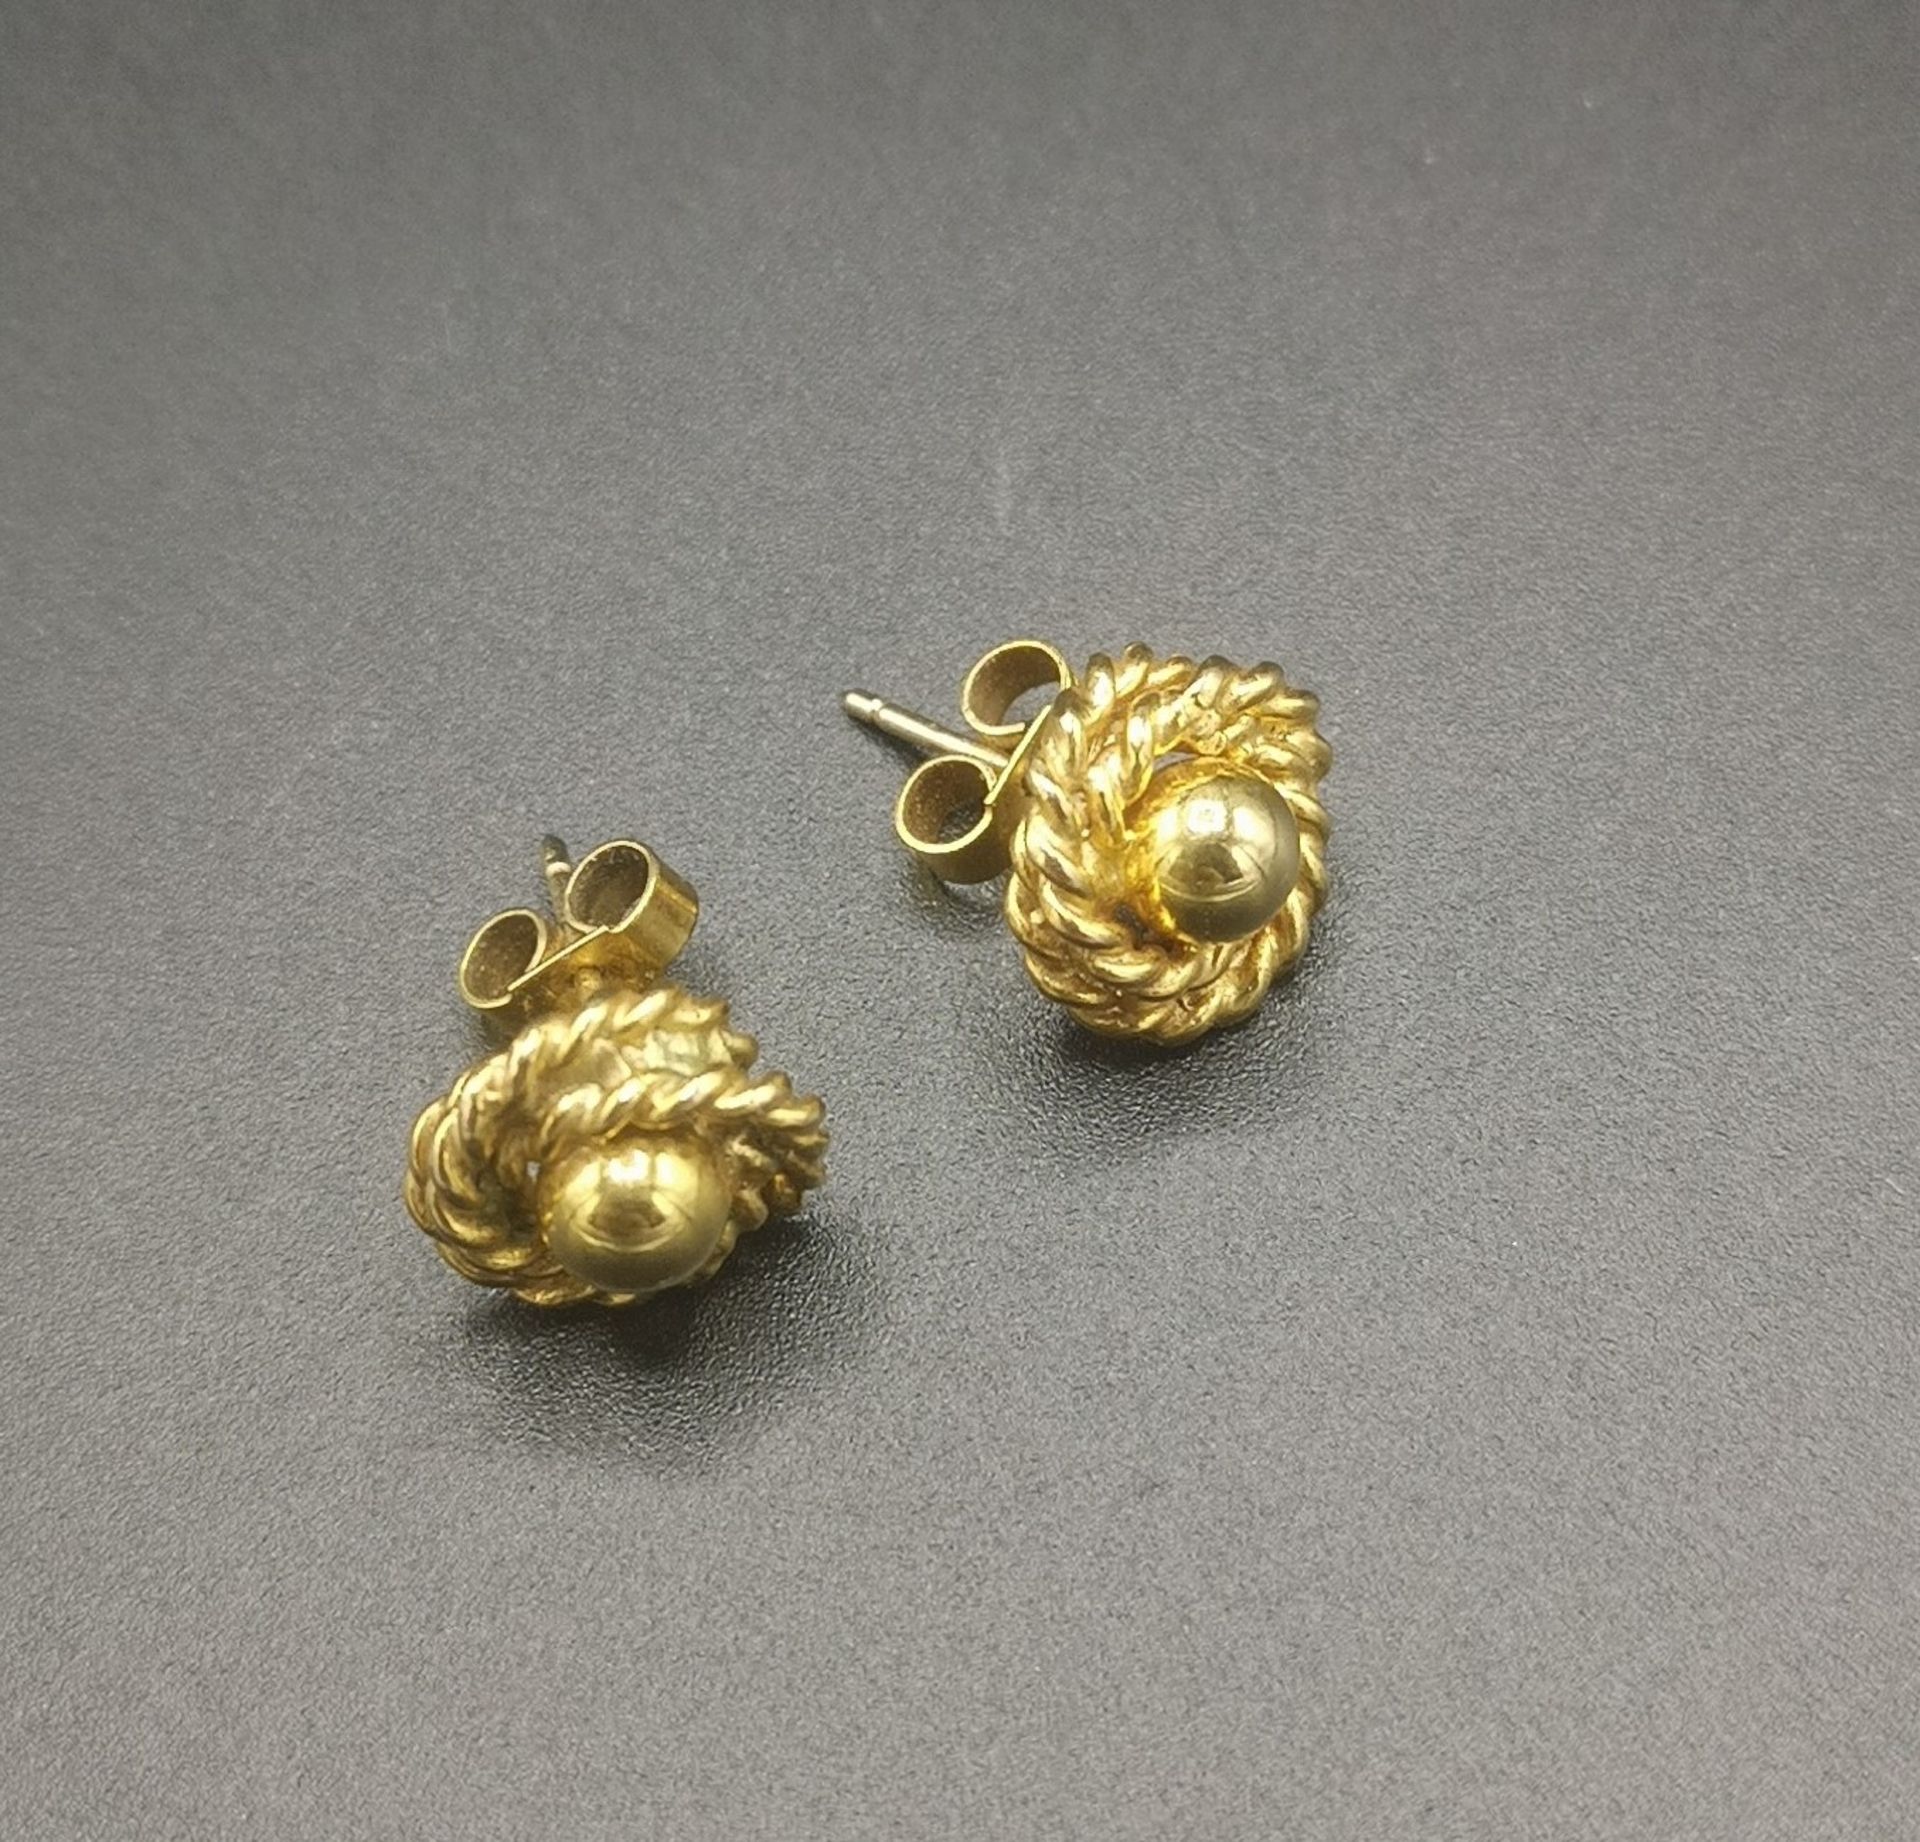 9ct gold pair or earrings